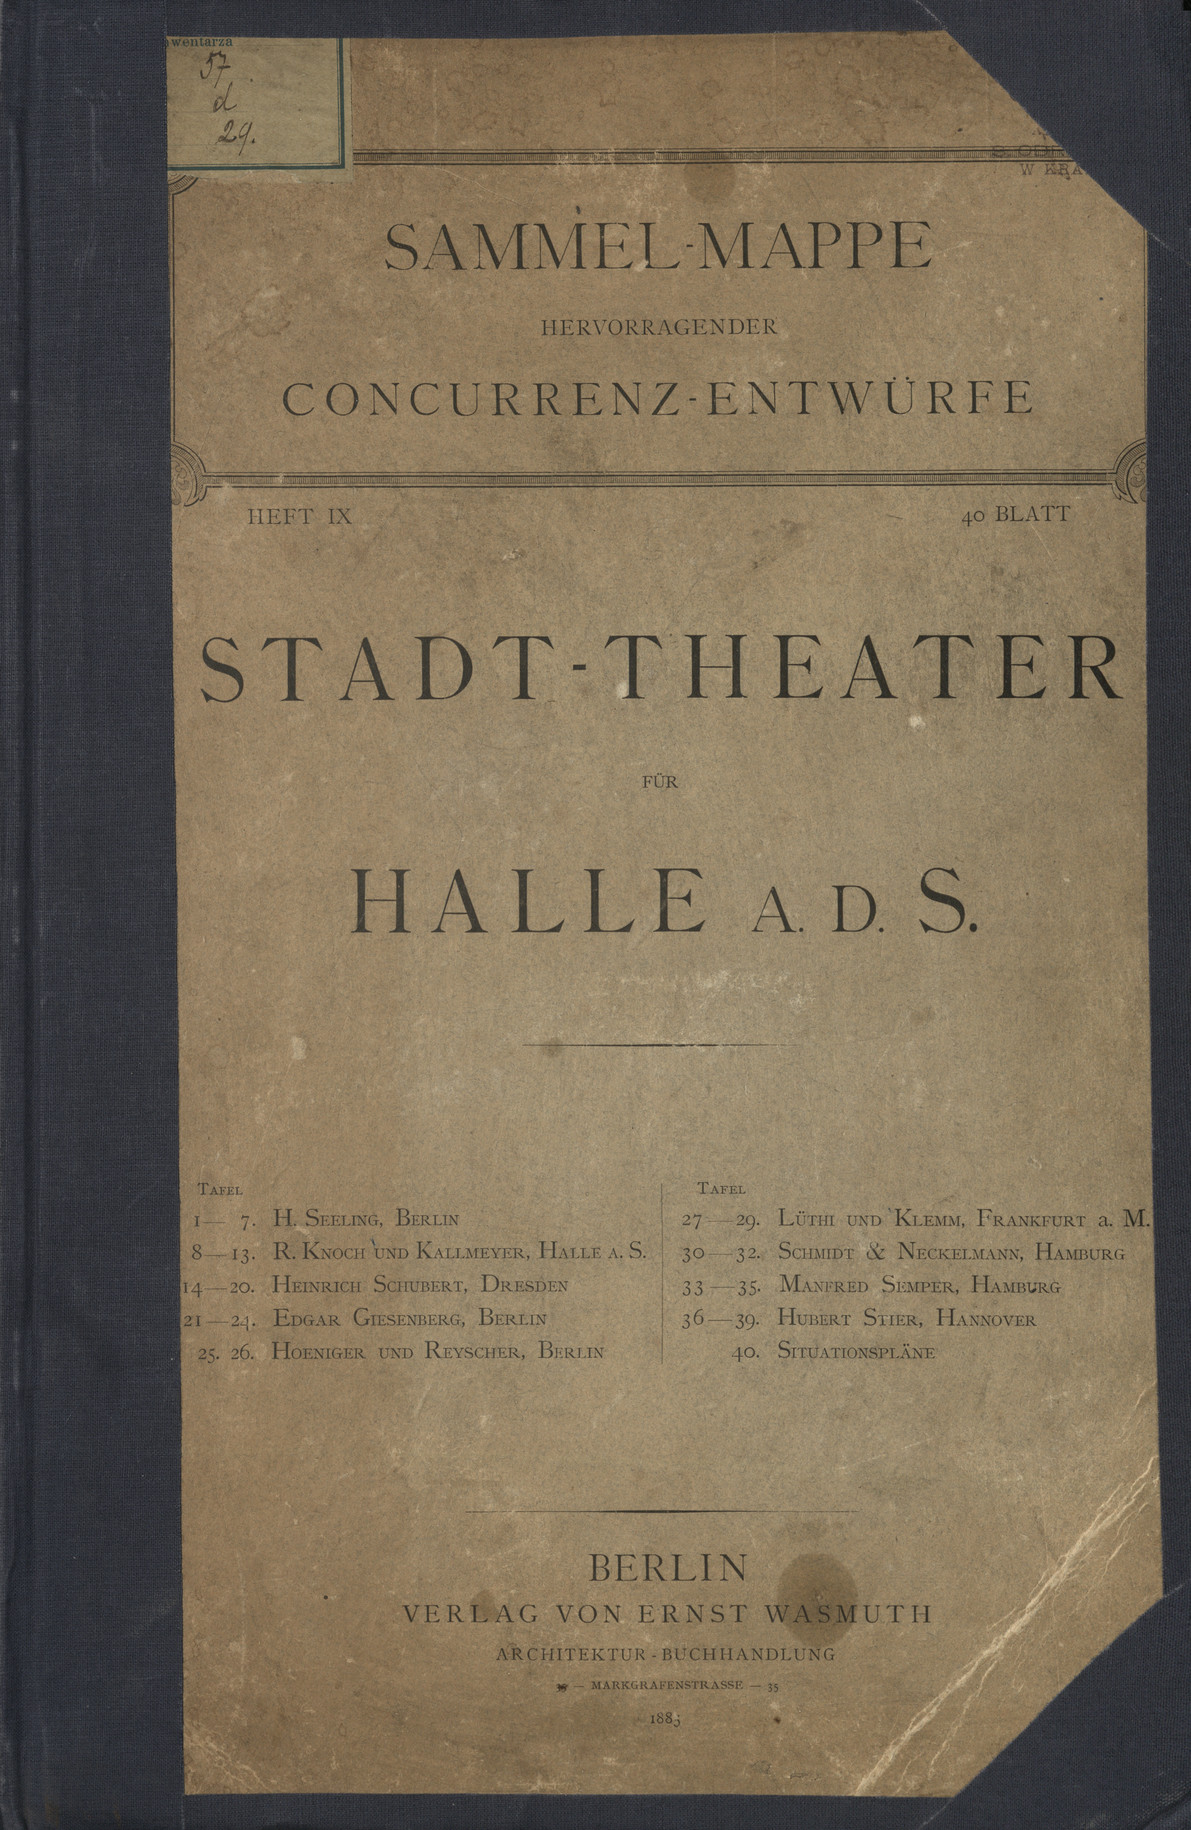 Stadt-Theater für Halle a. d. S.